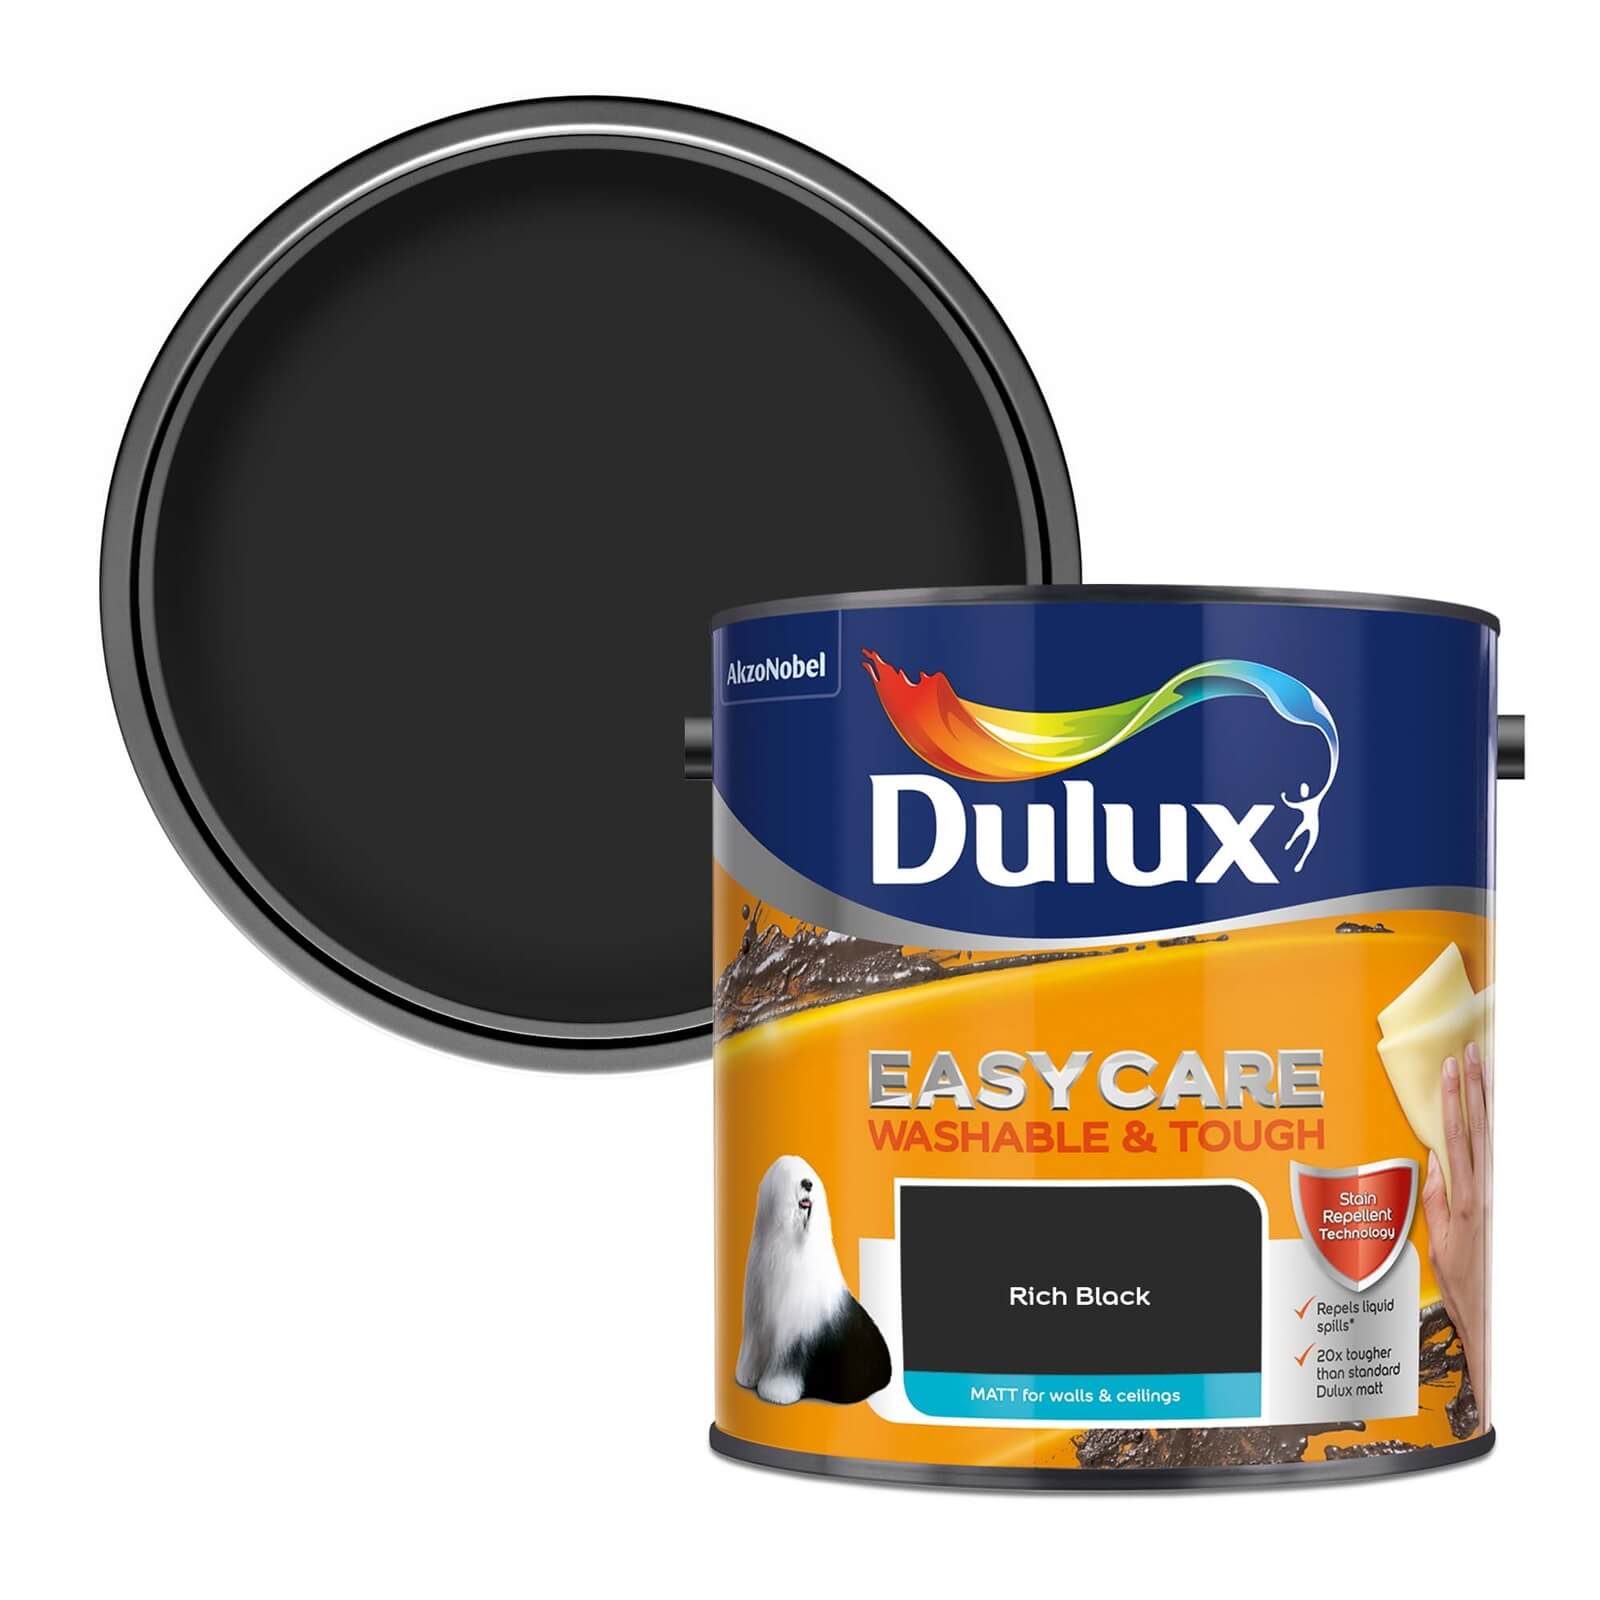 Dulux Easycare Washable & Tough Matt Paint Rich Black - 2.5L